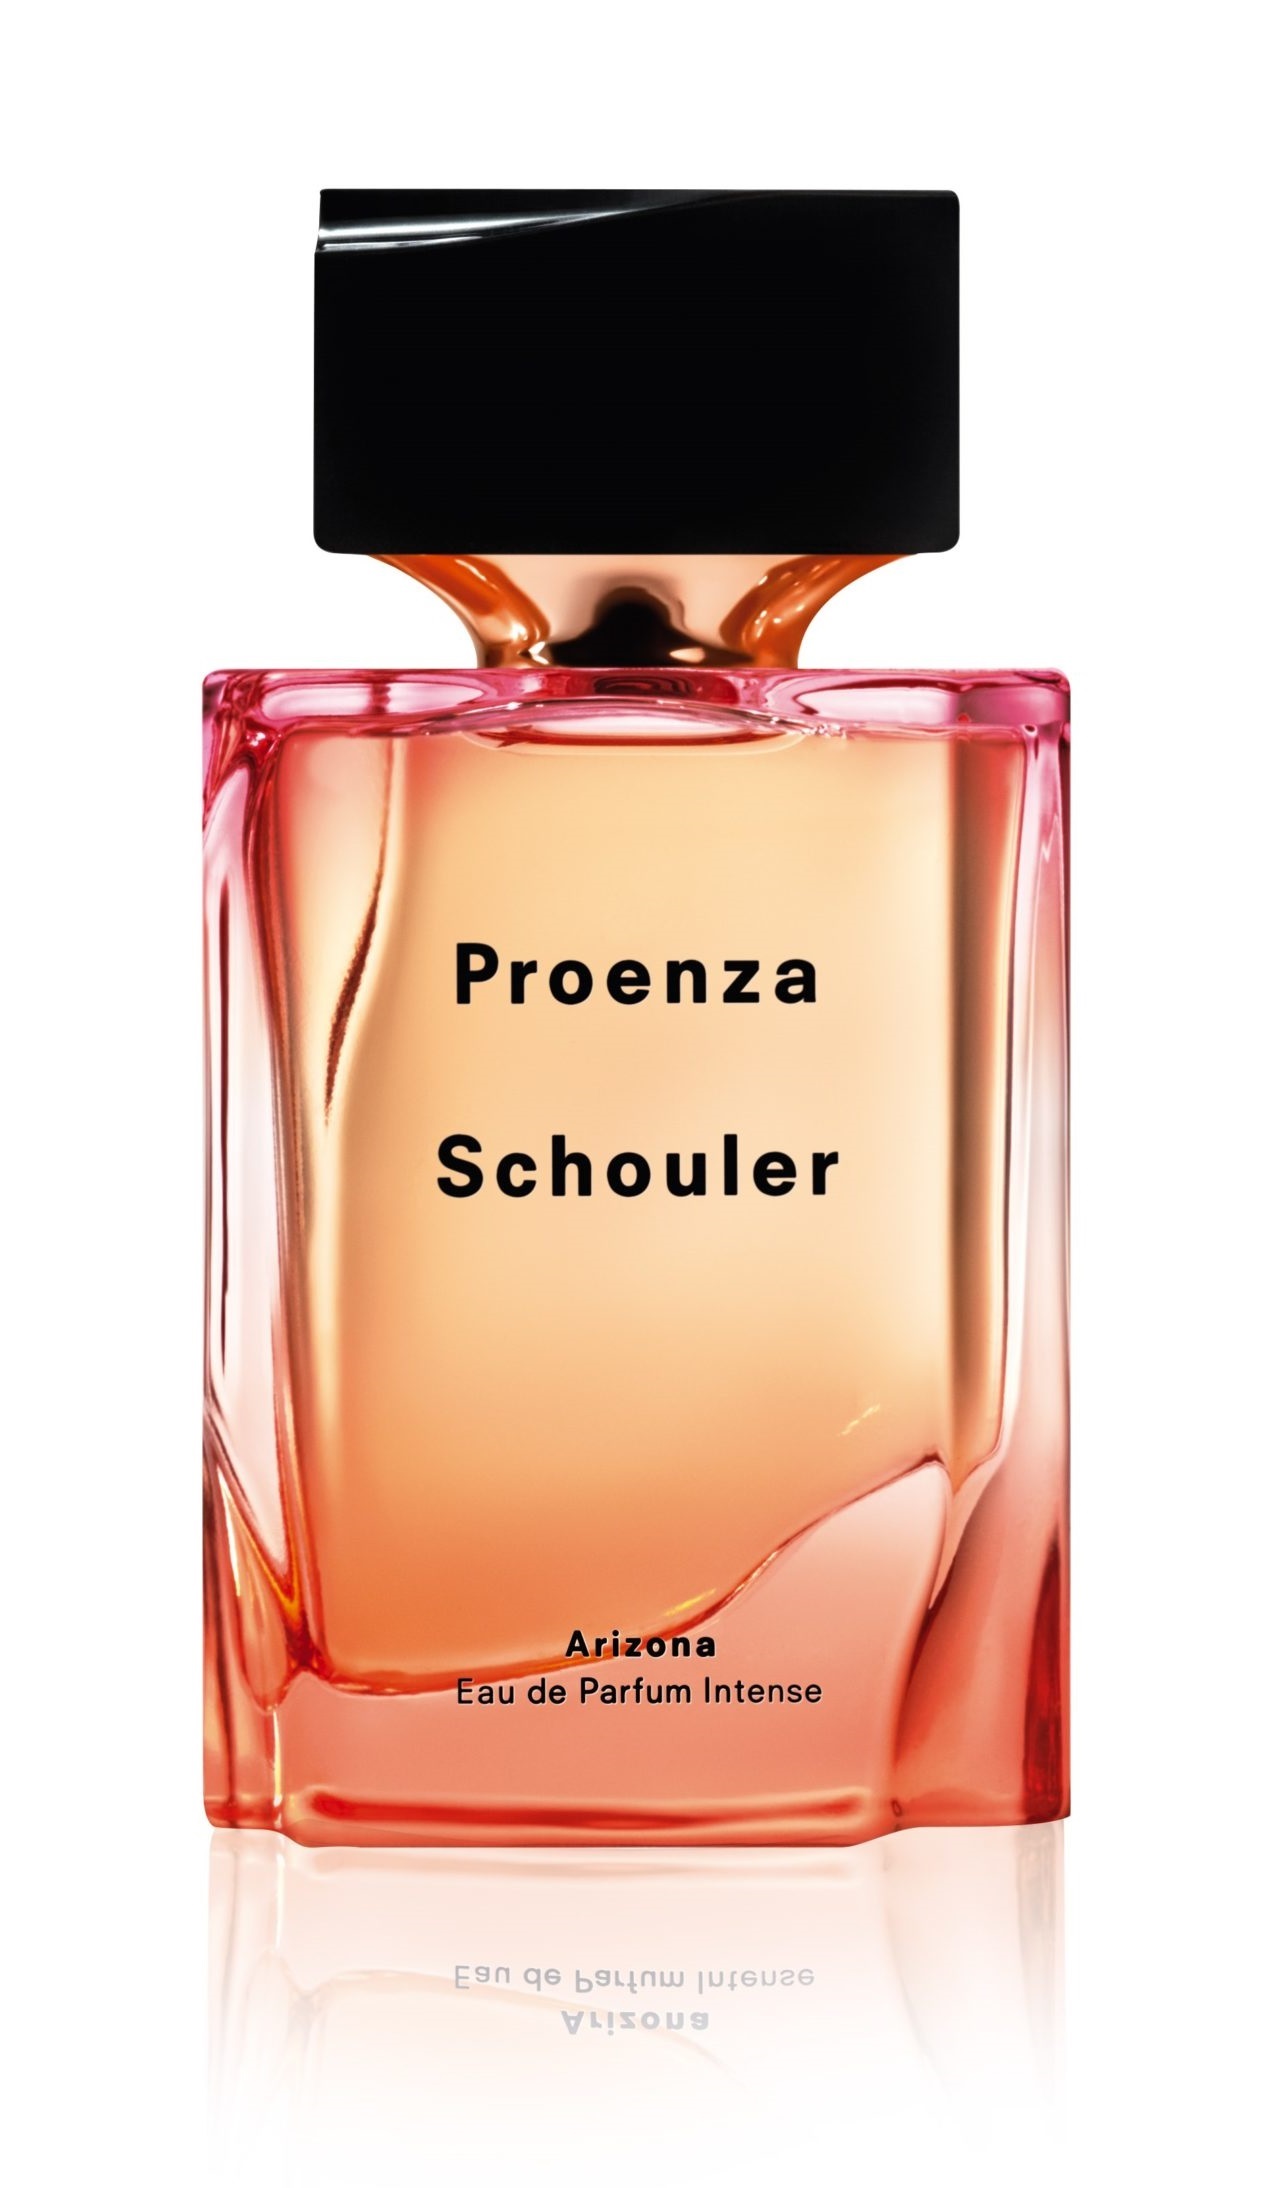 Proenza Schouler Arizona Intense, edp 50ml - Teszter